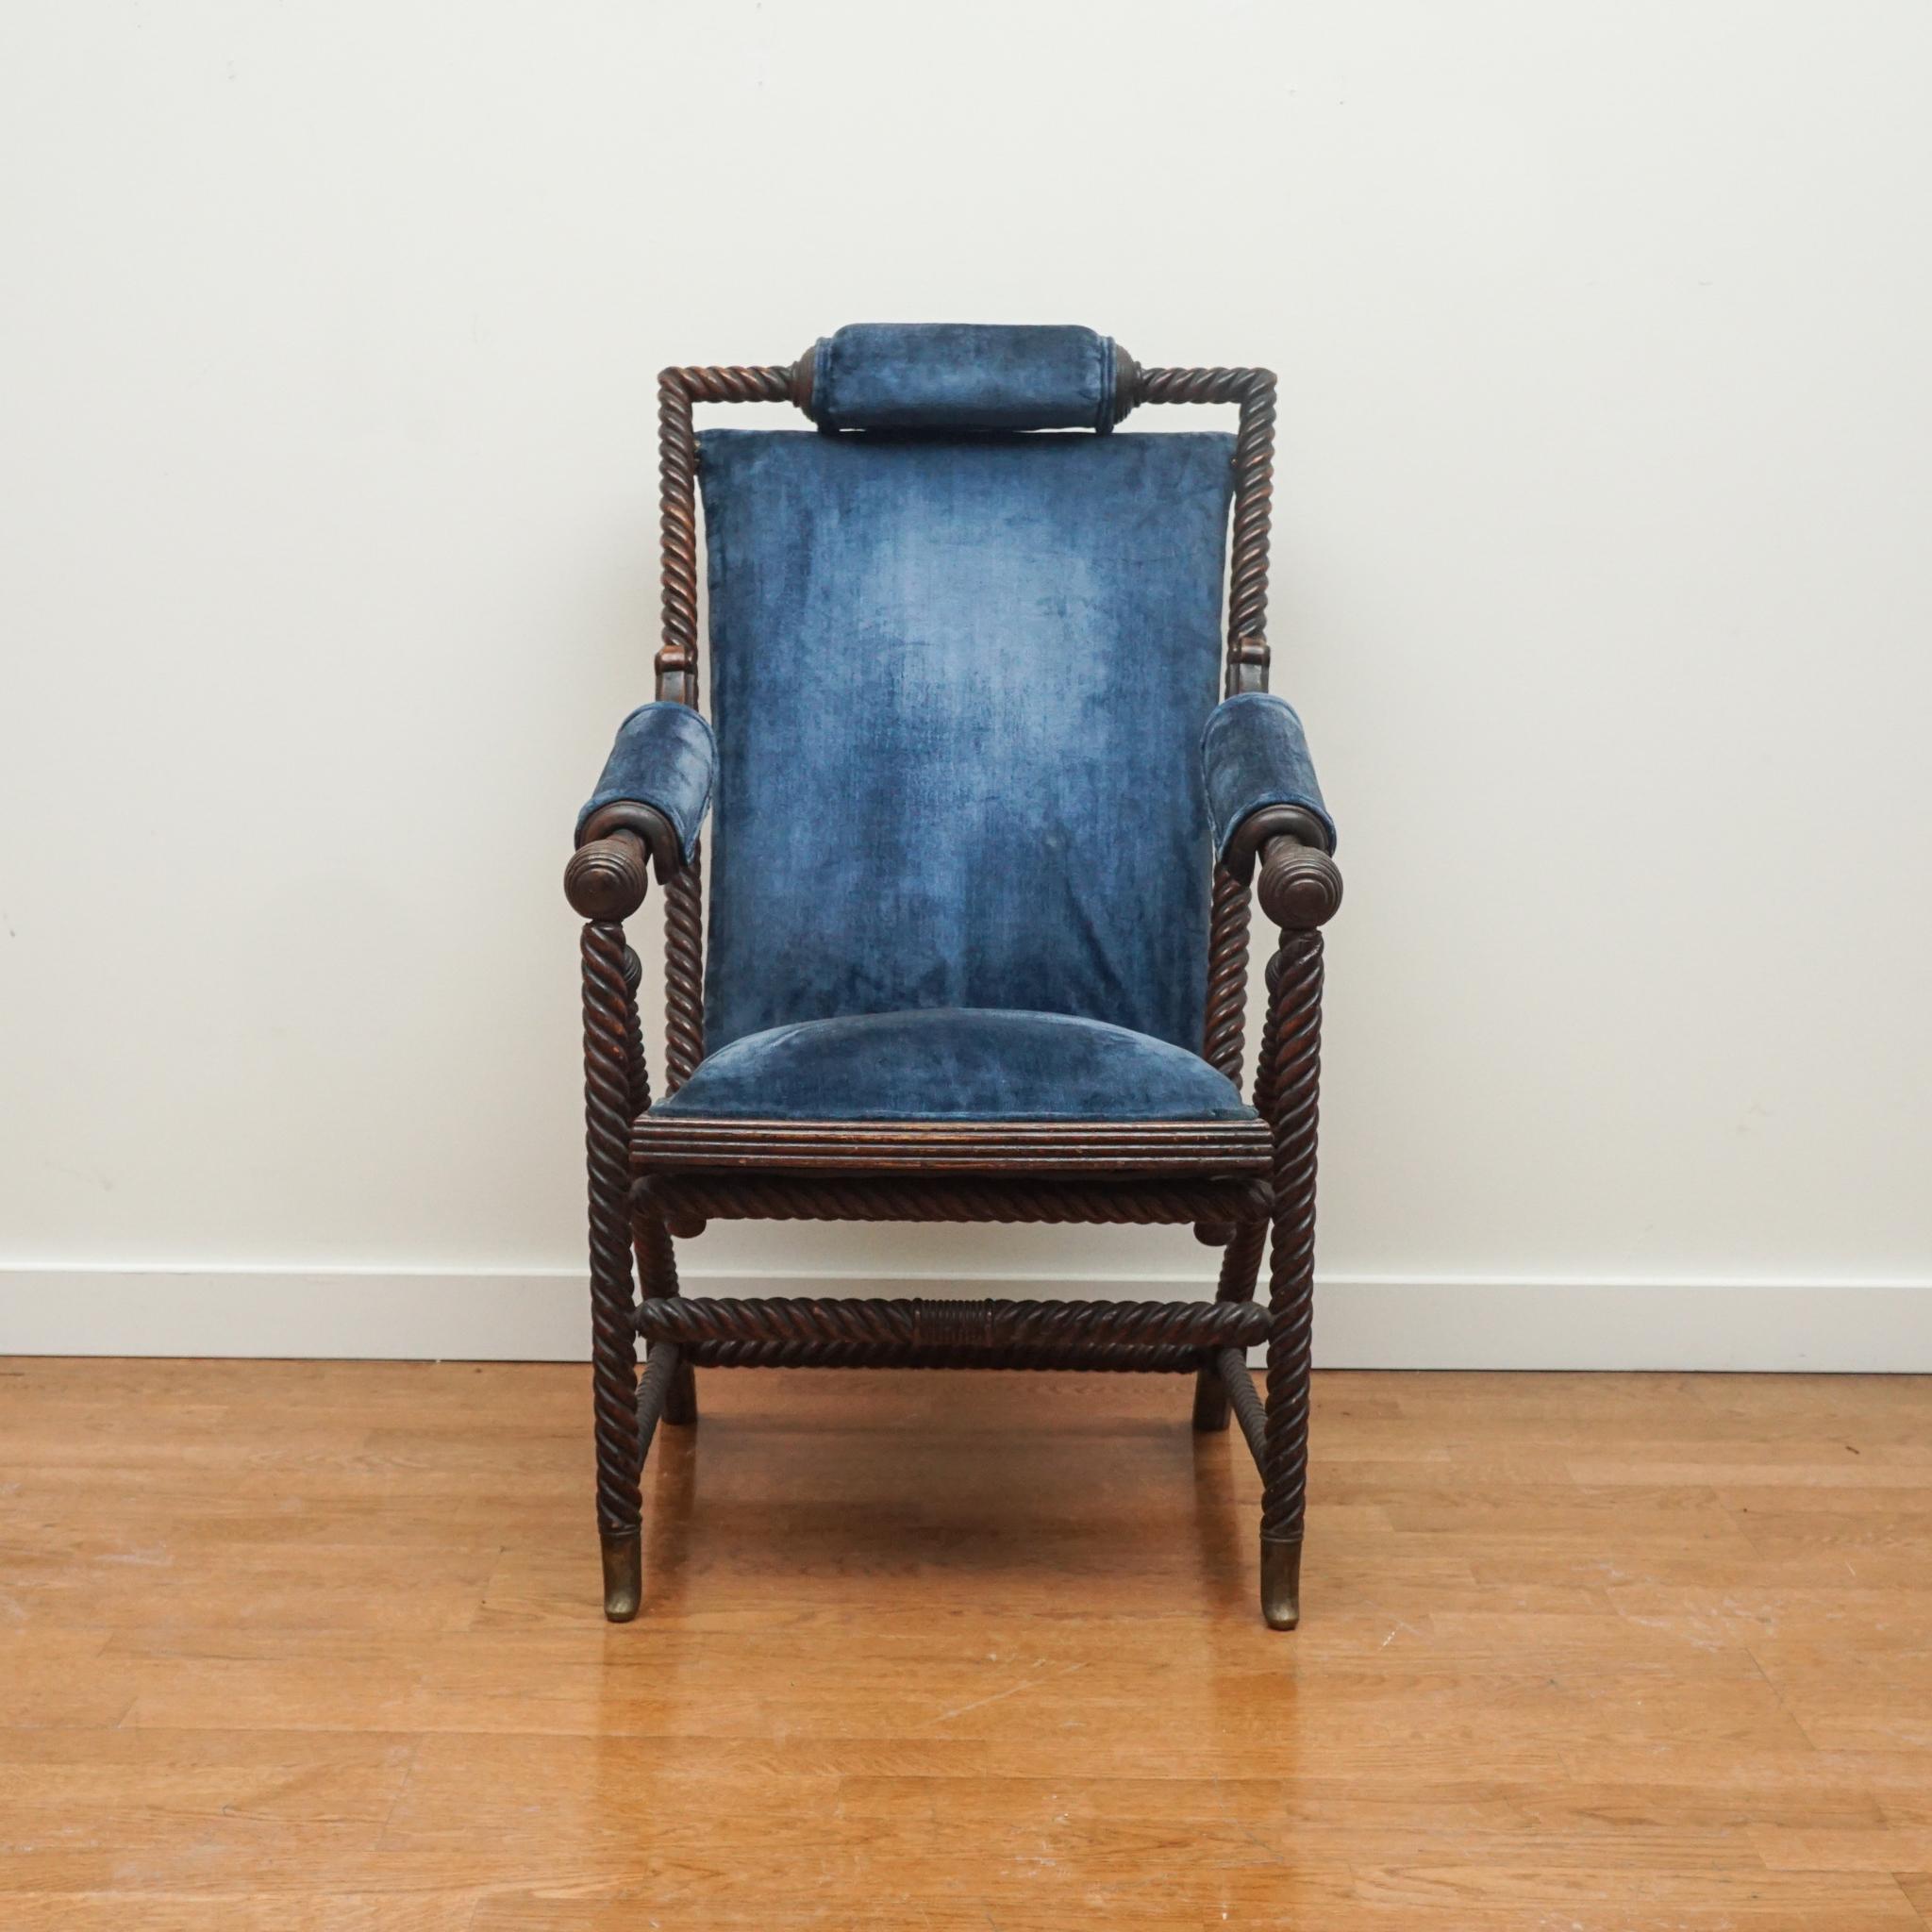 Der hier gezeigte viktorianische Sessel wurde Ende des 19. Jahrhunderts von dem deutschen Designer George Hunzinger entworfen. Der Stuhl spiegelt zwar die kunstvollen Möbel seiner Zeit wider, ist aber durch die unter den Armlehnen angebrachten